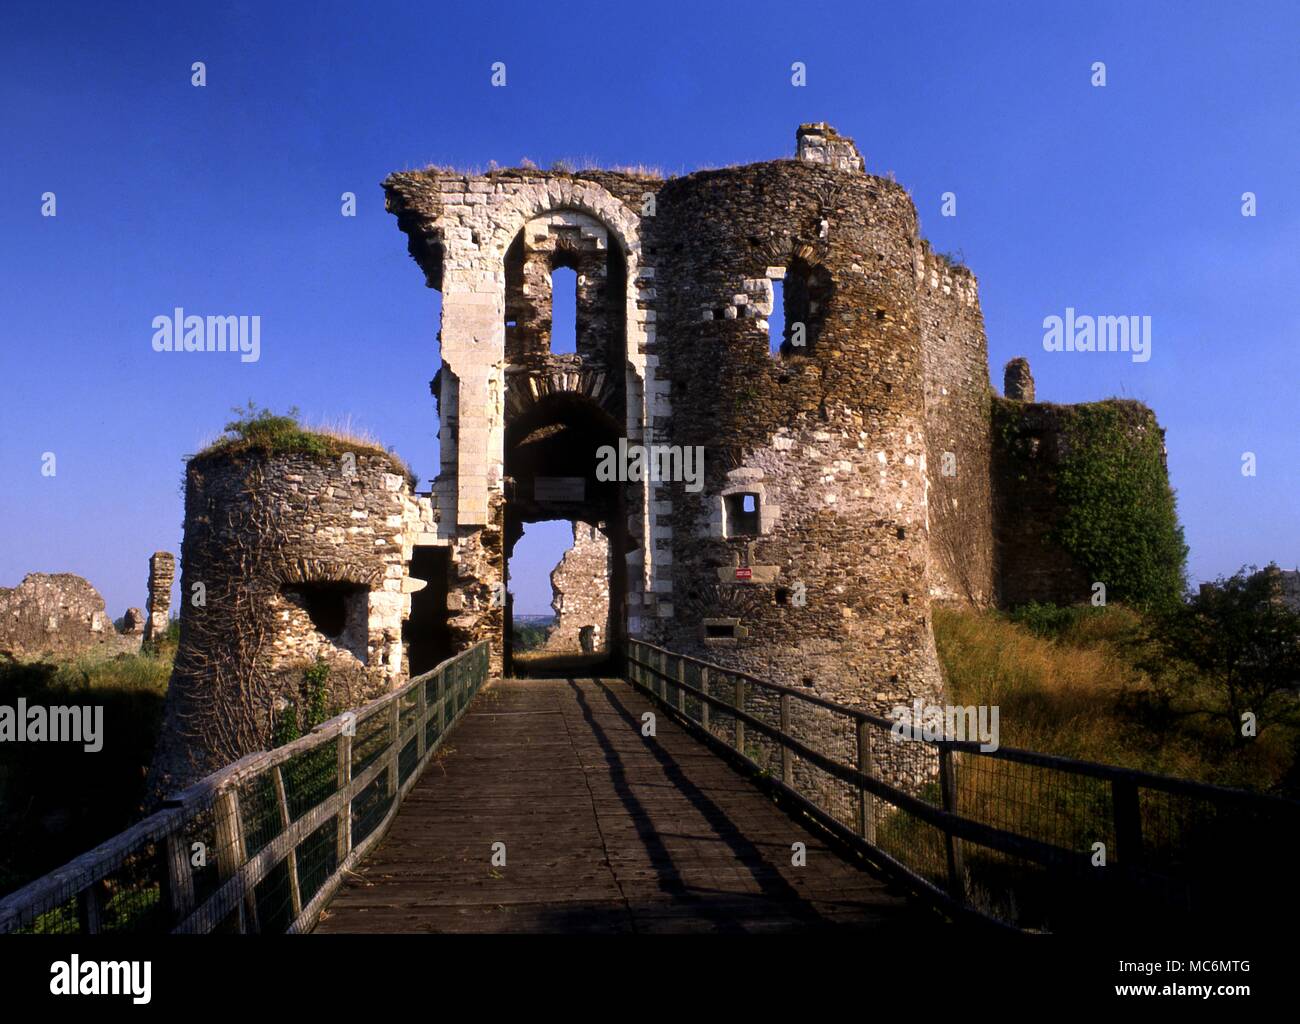 Gilles de Rais La ruinosa en castillo Champtoce sur Loire, que fue uno de los numerosos castillos pertenecientes a Gilles de Rais ahora aparece como uno de los Chateaux Bluebird Foto de stock